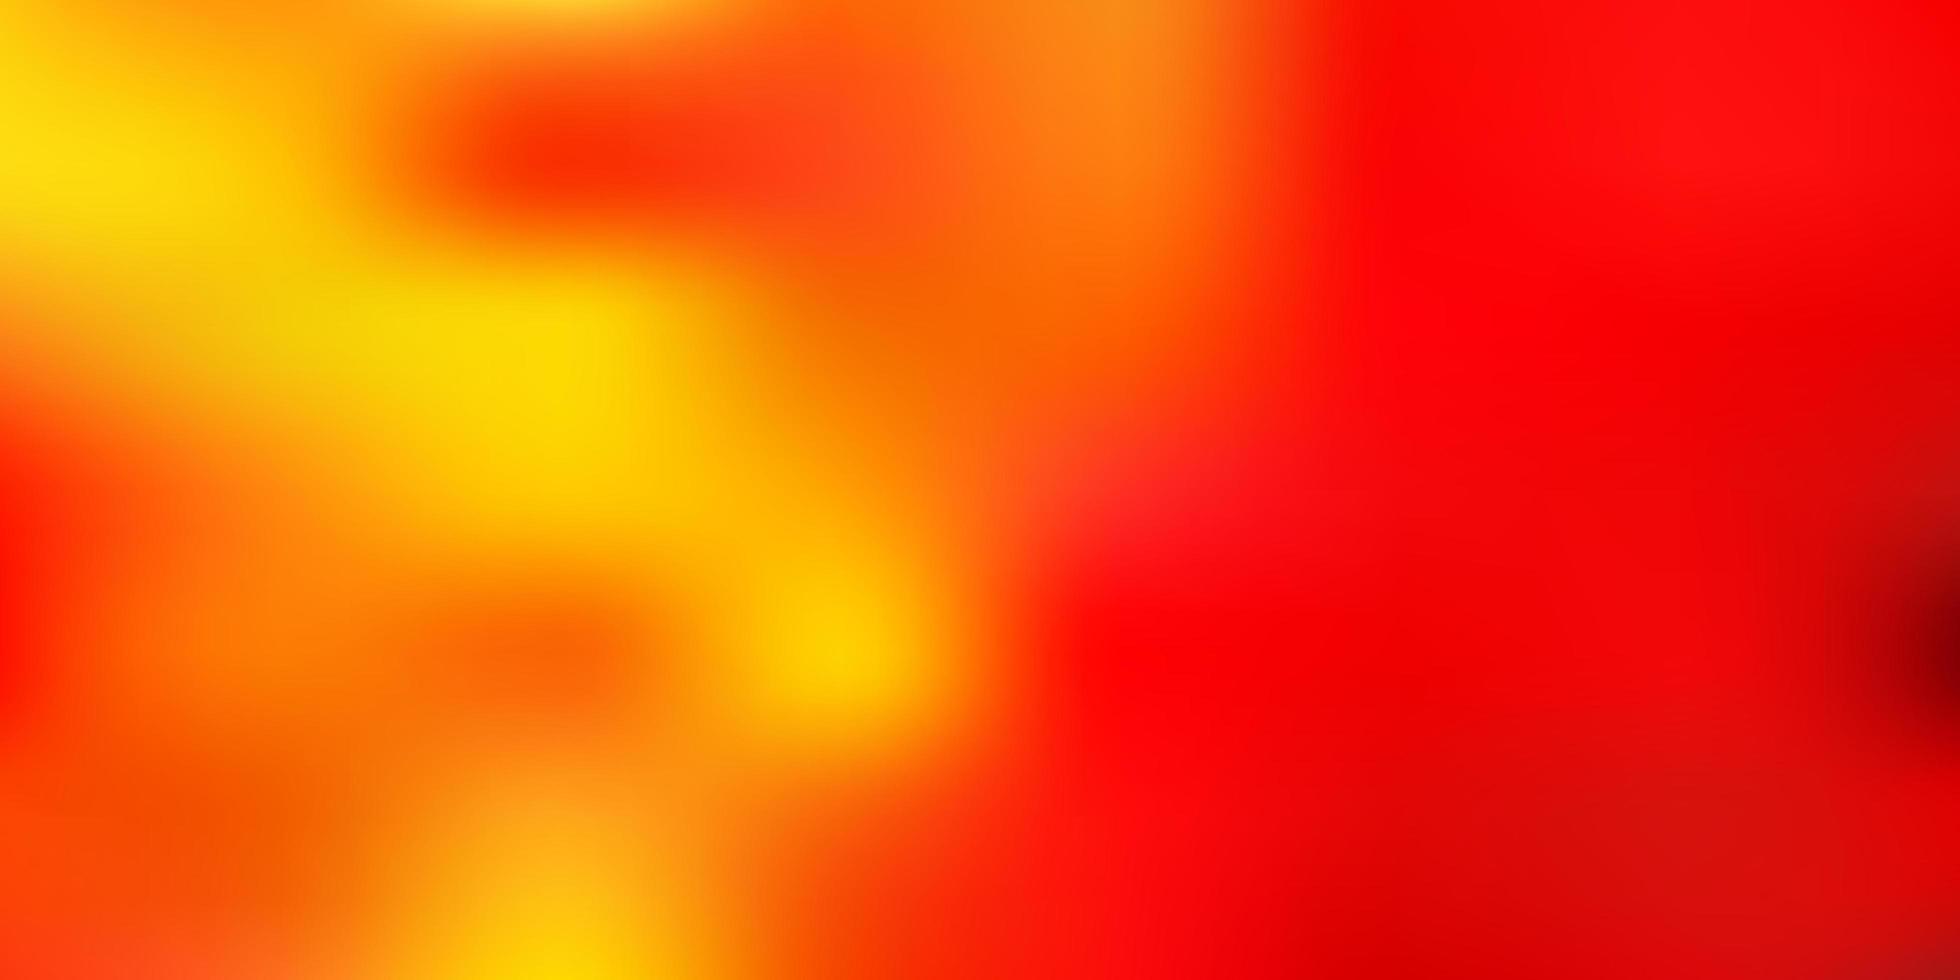 ljus orange vektor abstrakt oskärpa bakgrund.